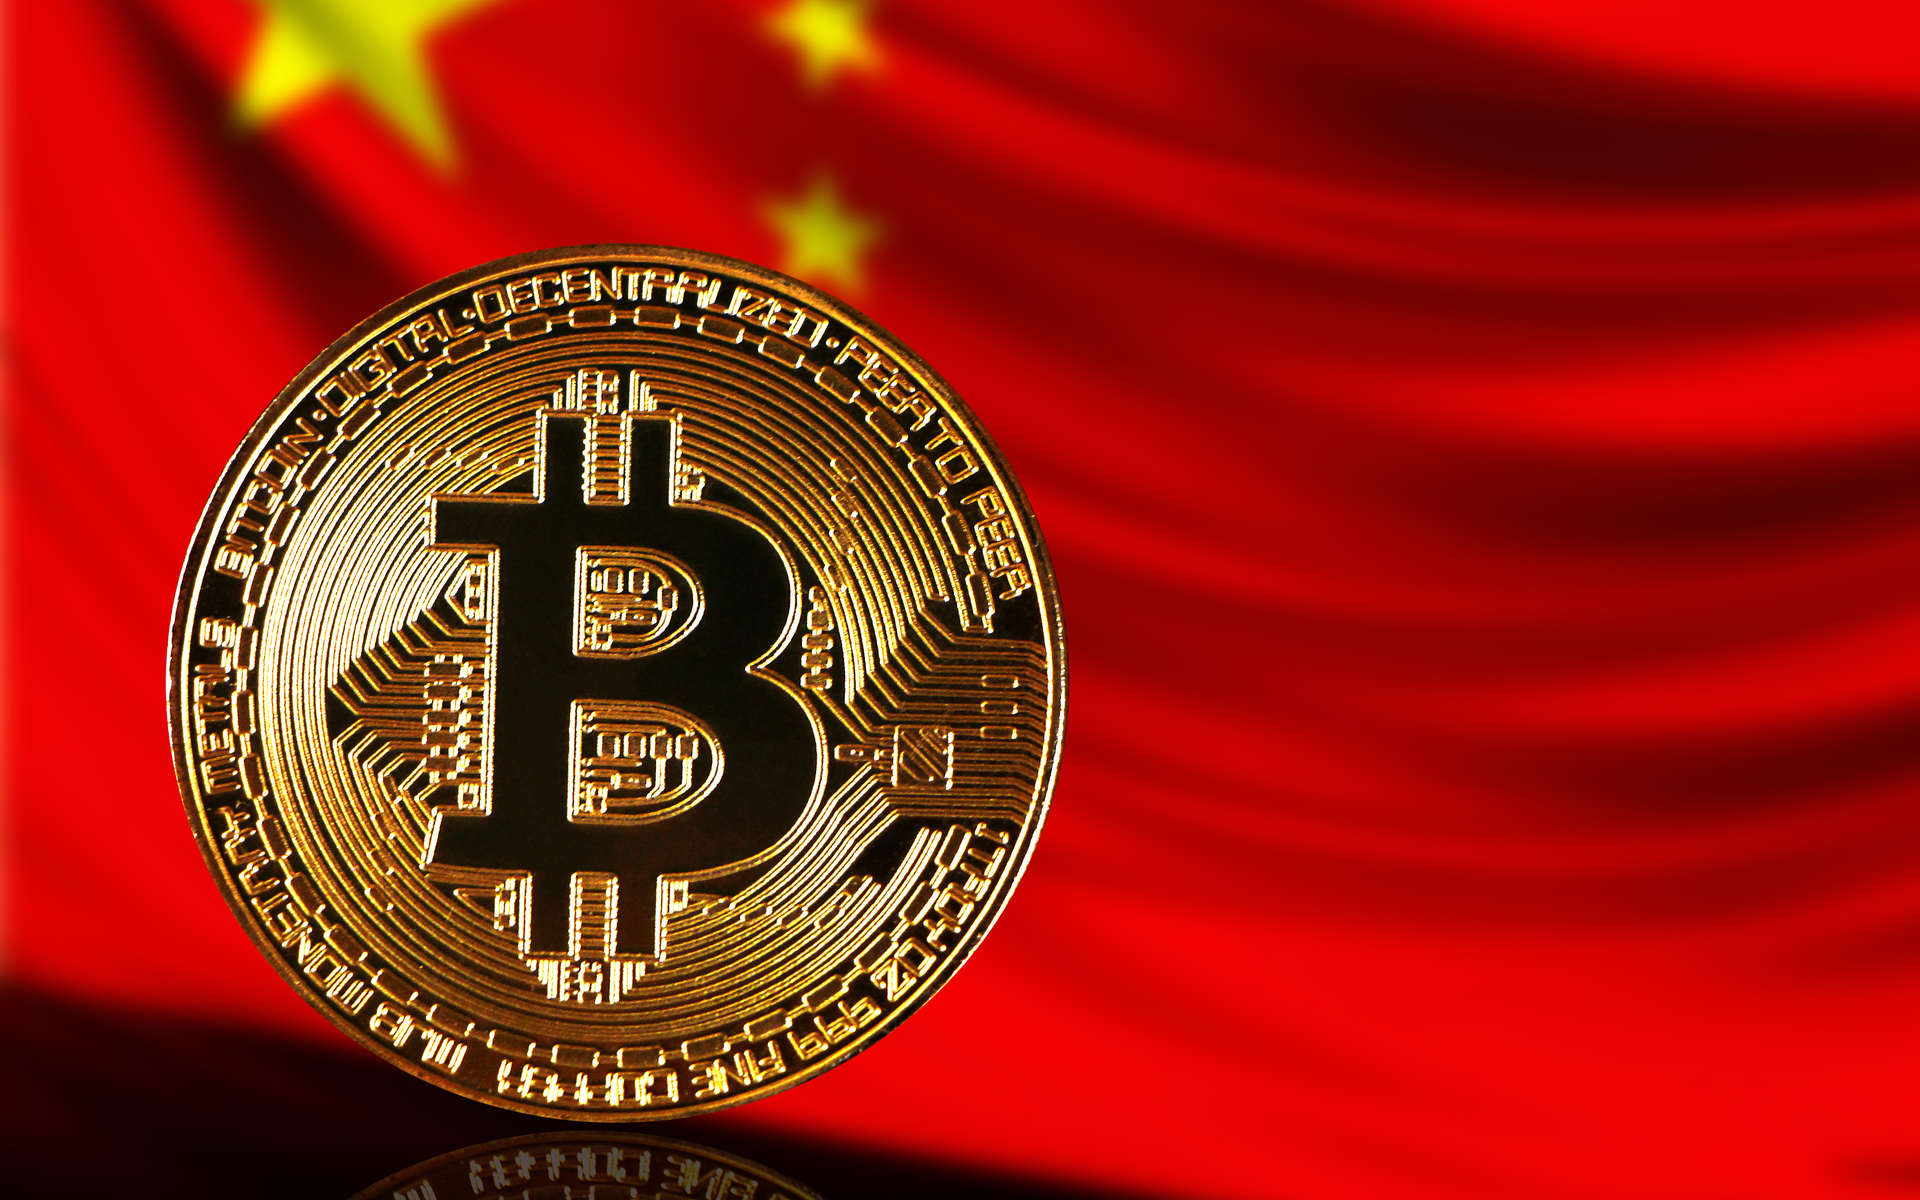 bitcoin market china